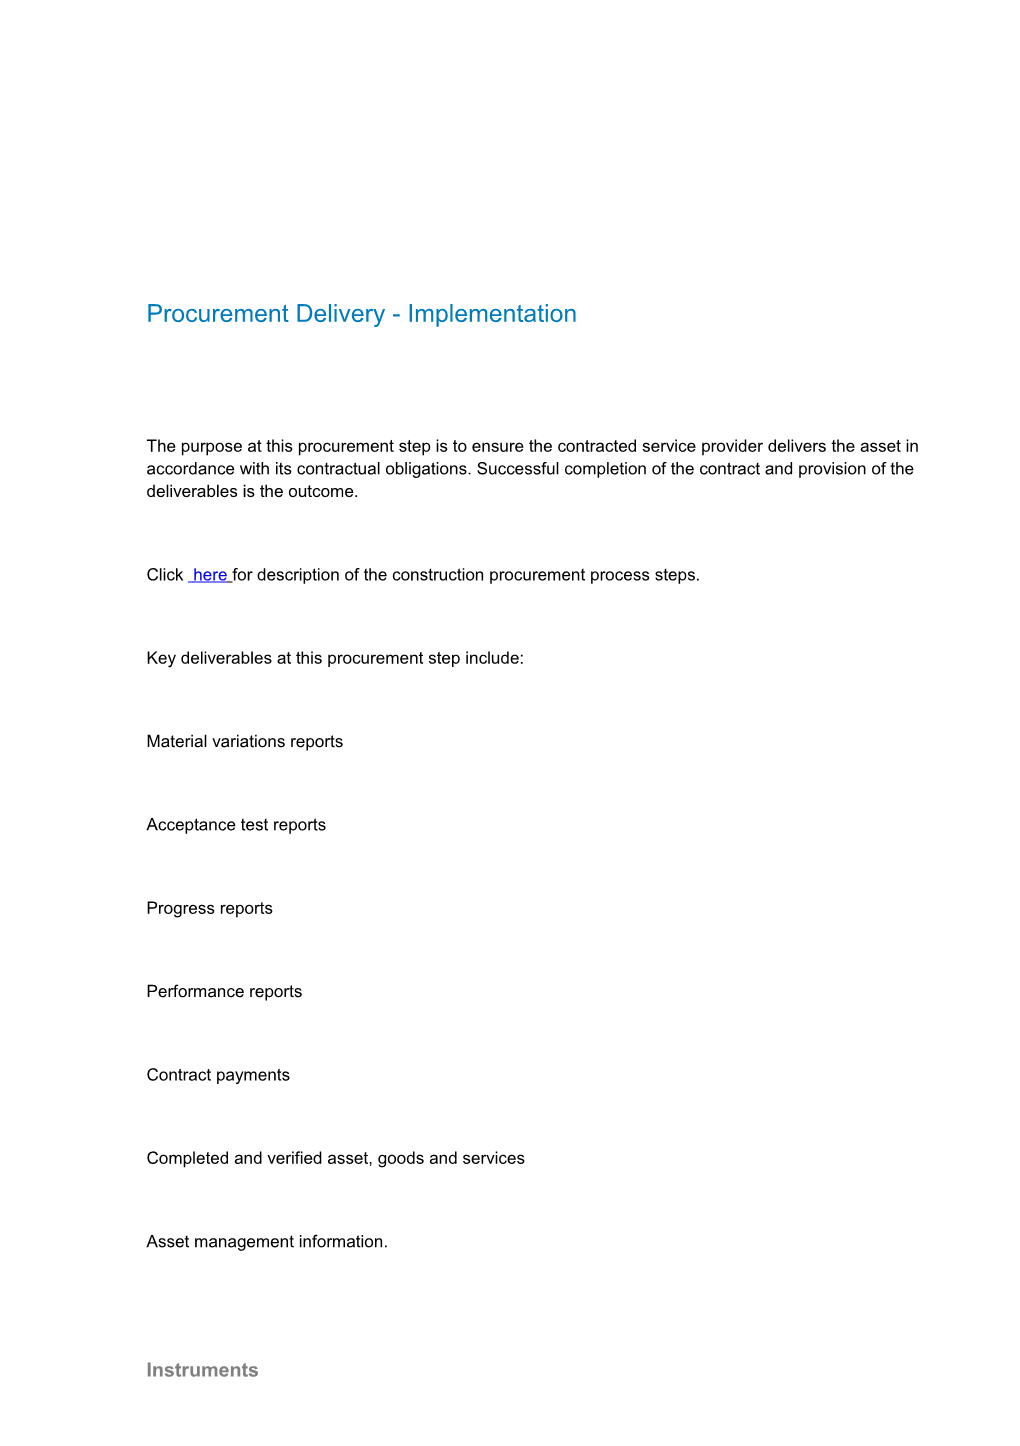 Click Here for Description of the Construction Procurement Process Steps